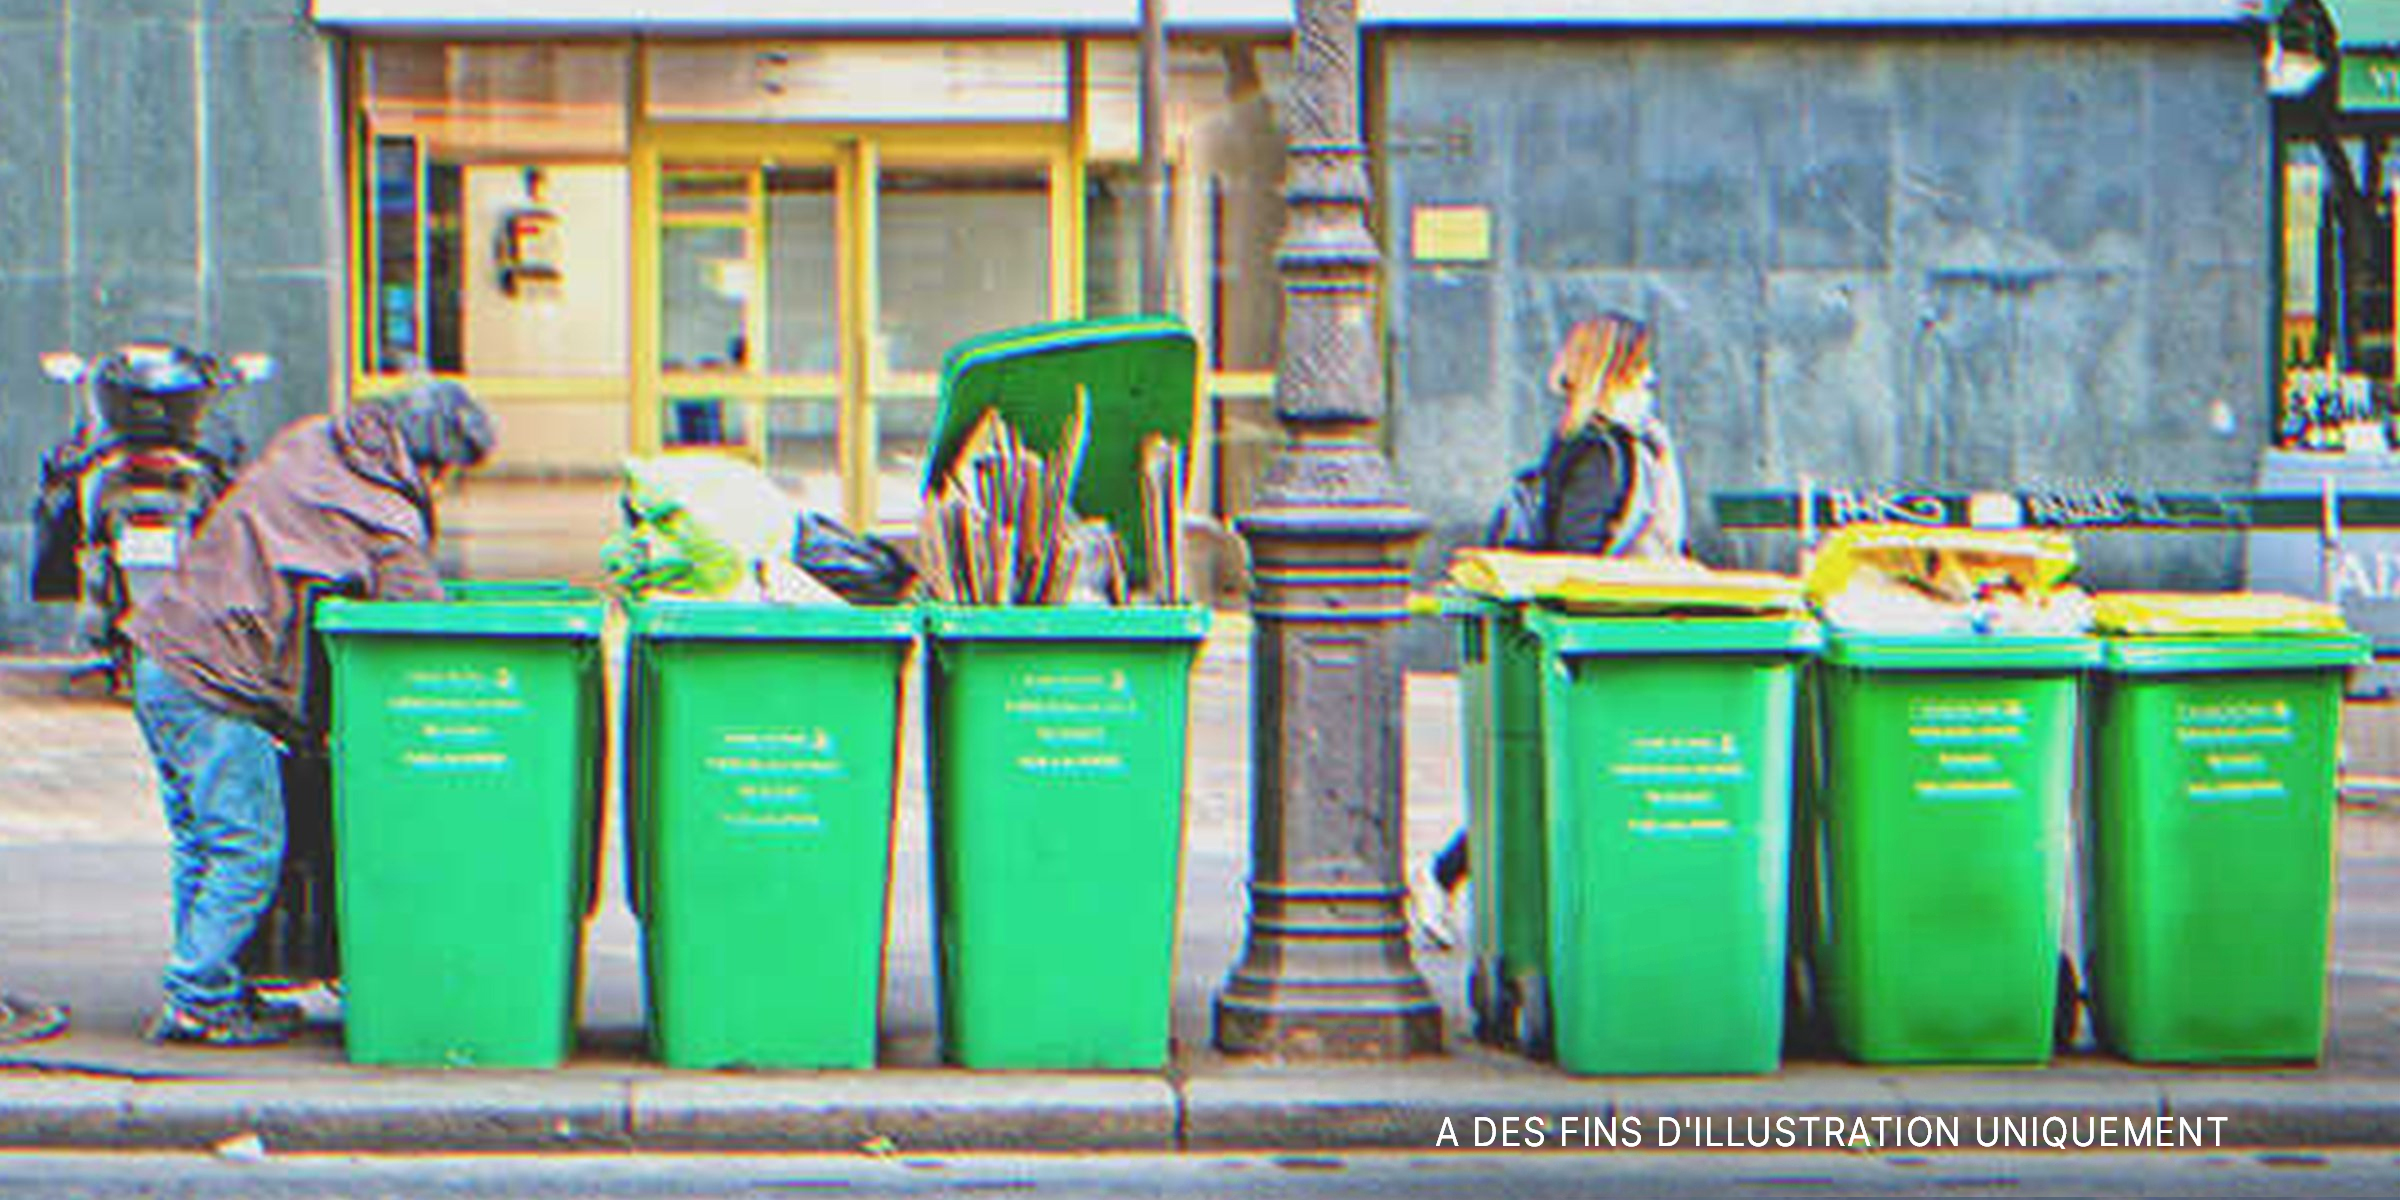 Un sans-abri fouille dans une poubelle. | Source : Shutterstock